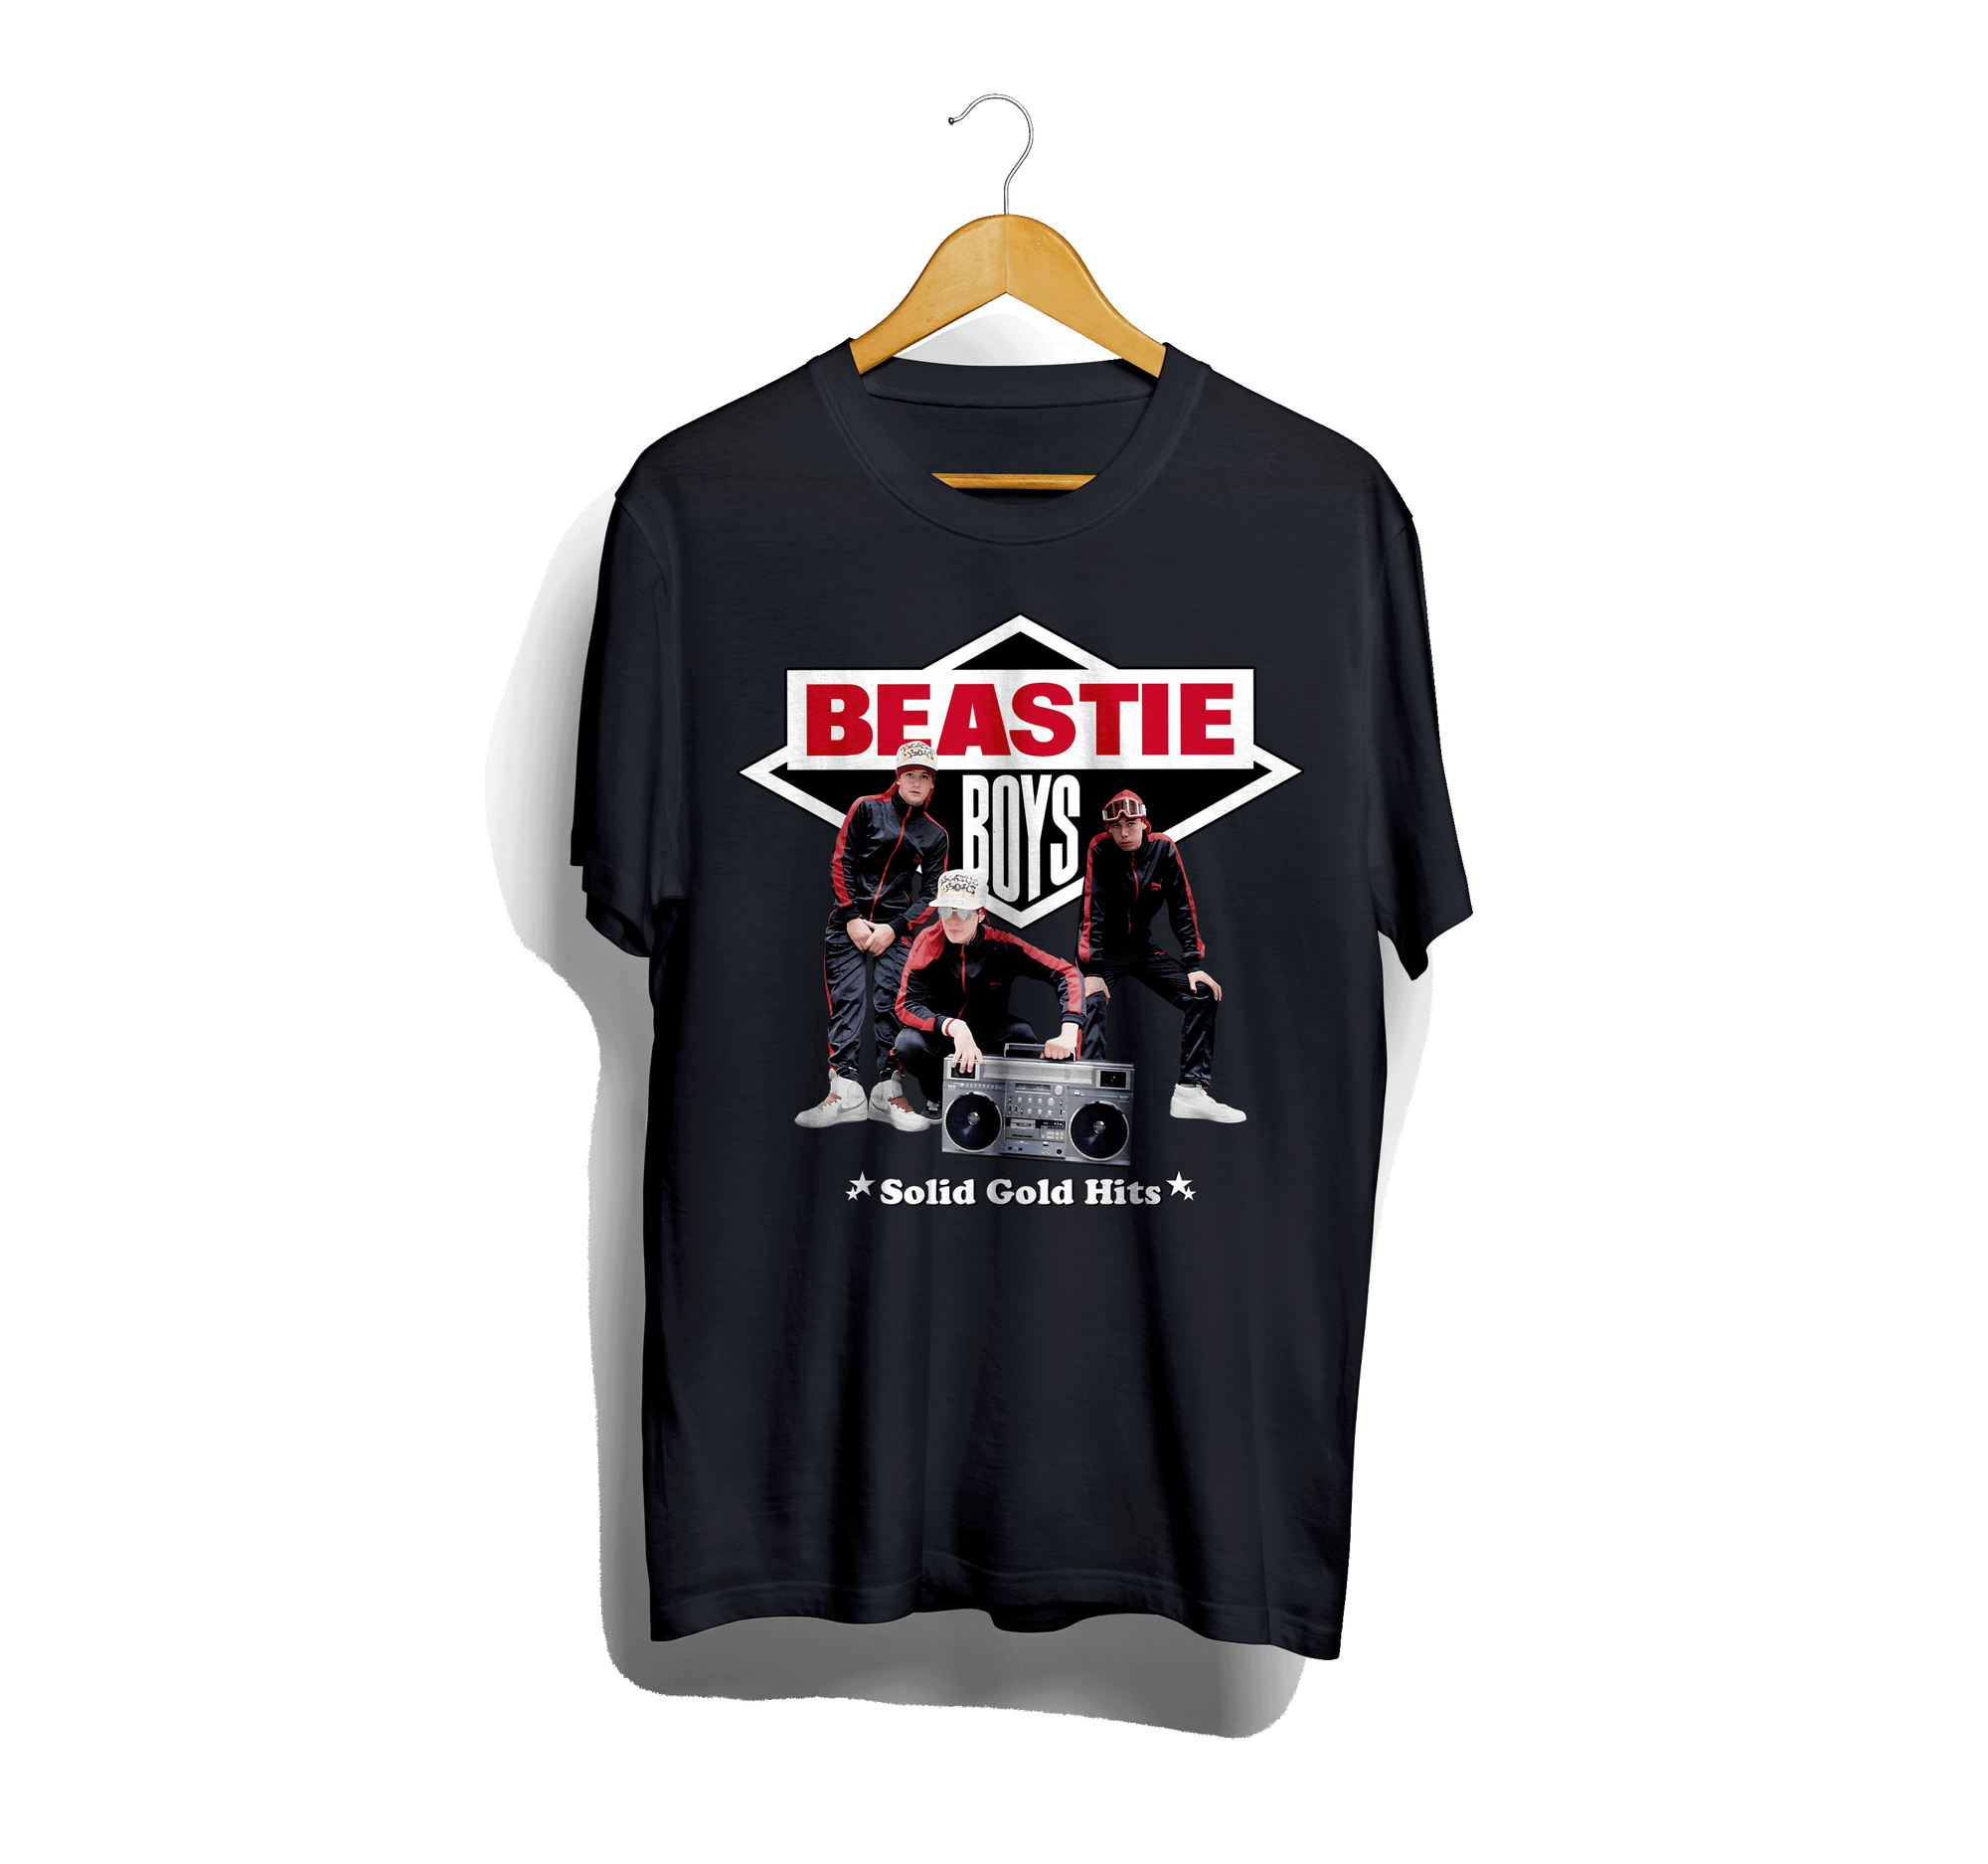 "Vintage Beastie Boys Legacy Tee: Throwback to Rock the Rhymes"